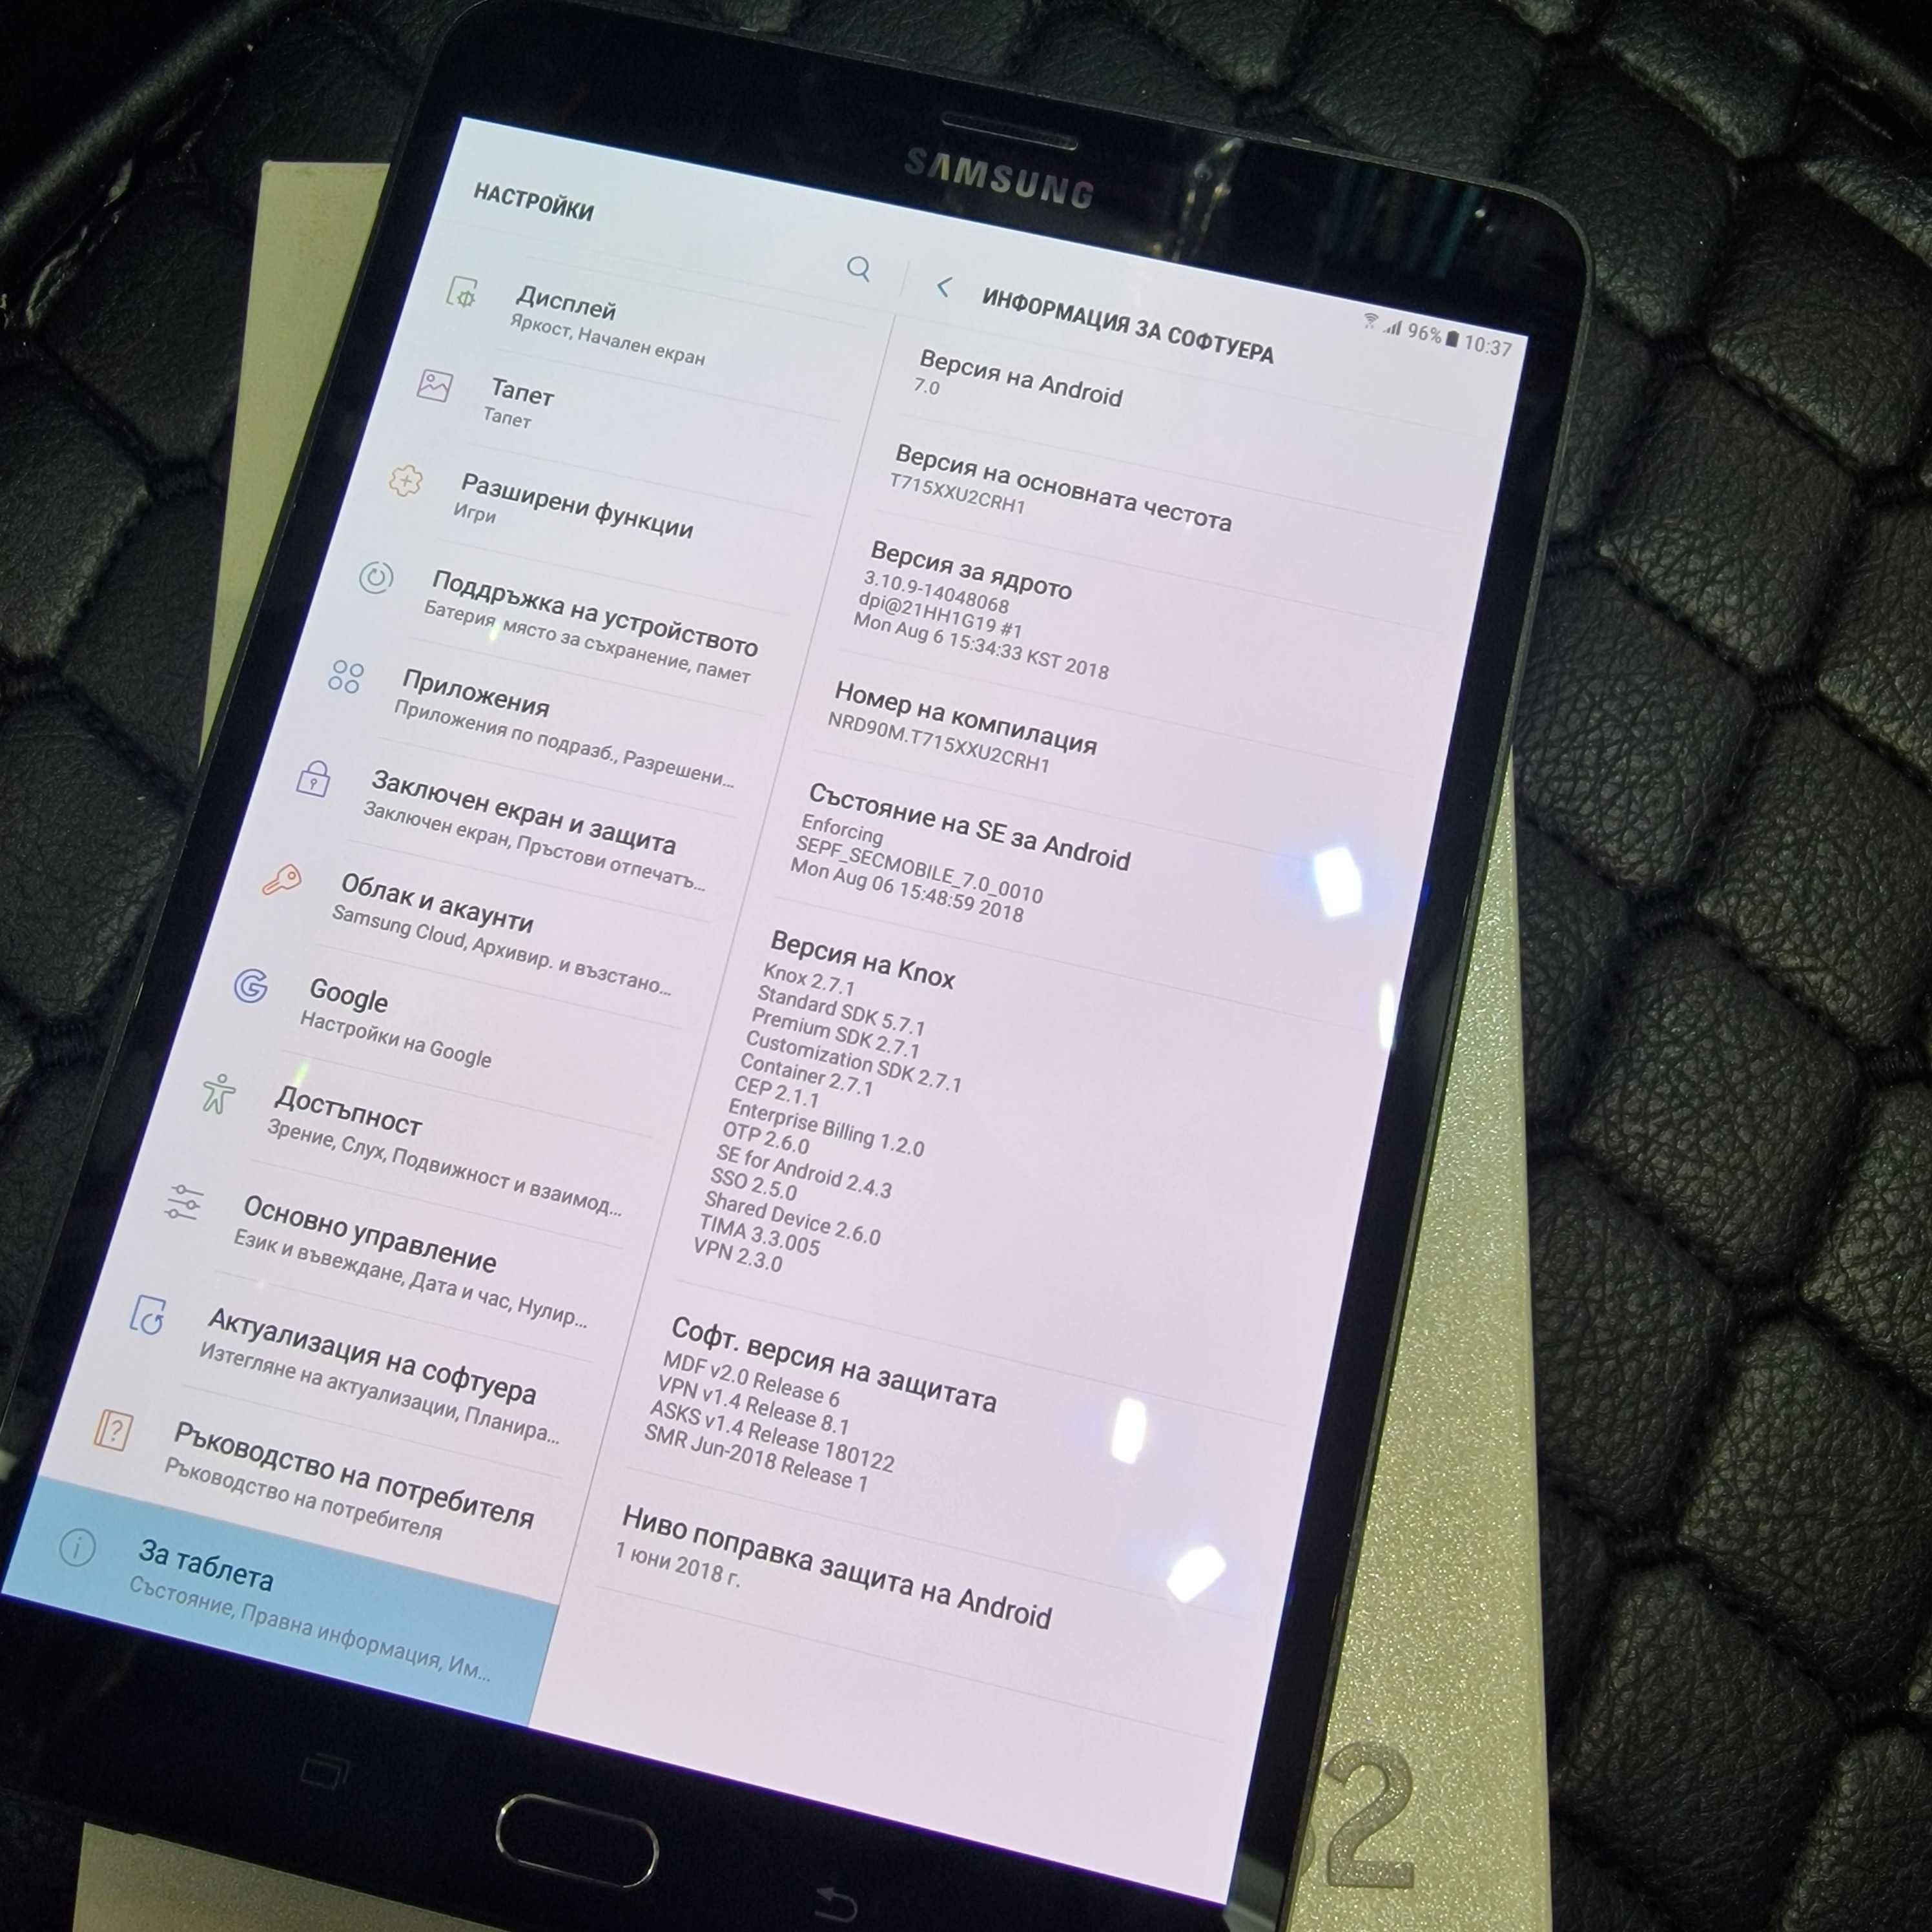 Samsung Galaxy Tab S2 8 (SM-T719) LTE 32GB, черен цвят